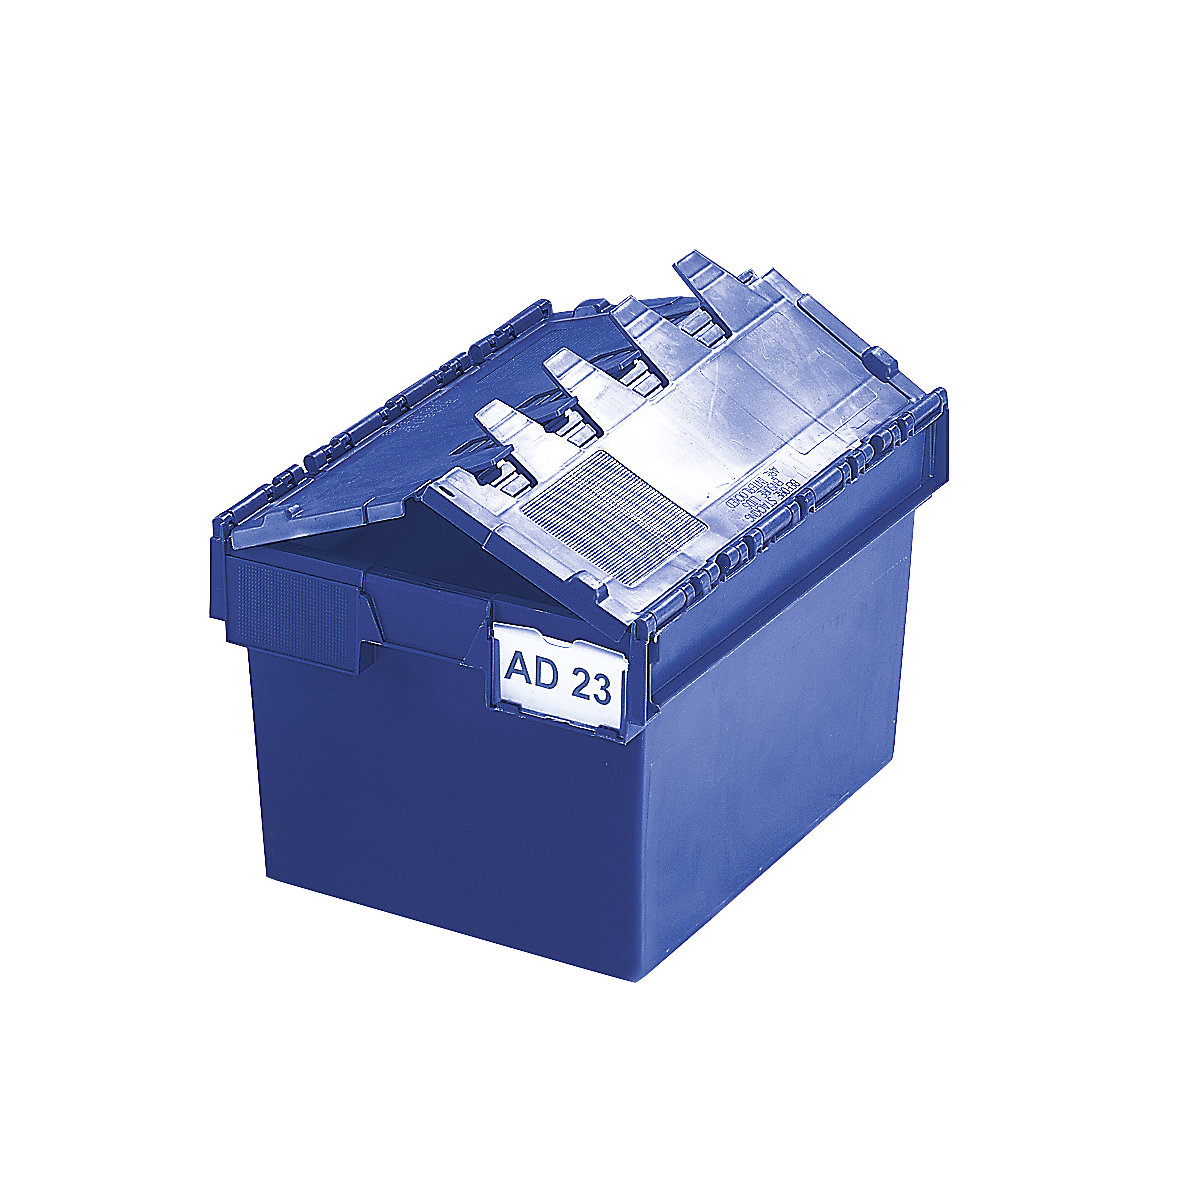 Mehrweg-Stapelbehälter KAIMAN, Inhalt 54 Liter, LxBxH 600 x 400 x 320 mm, blau